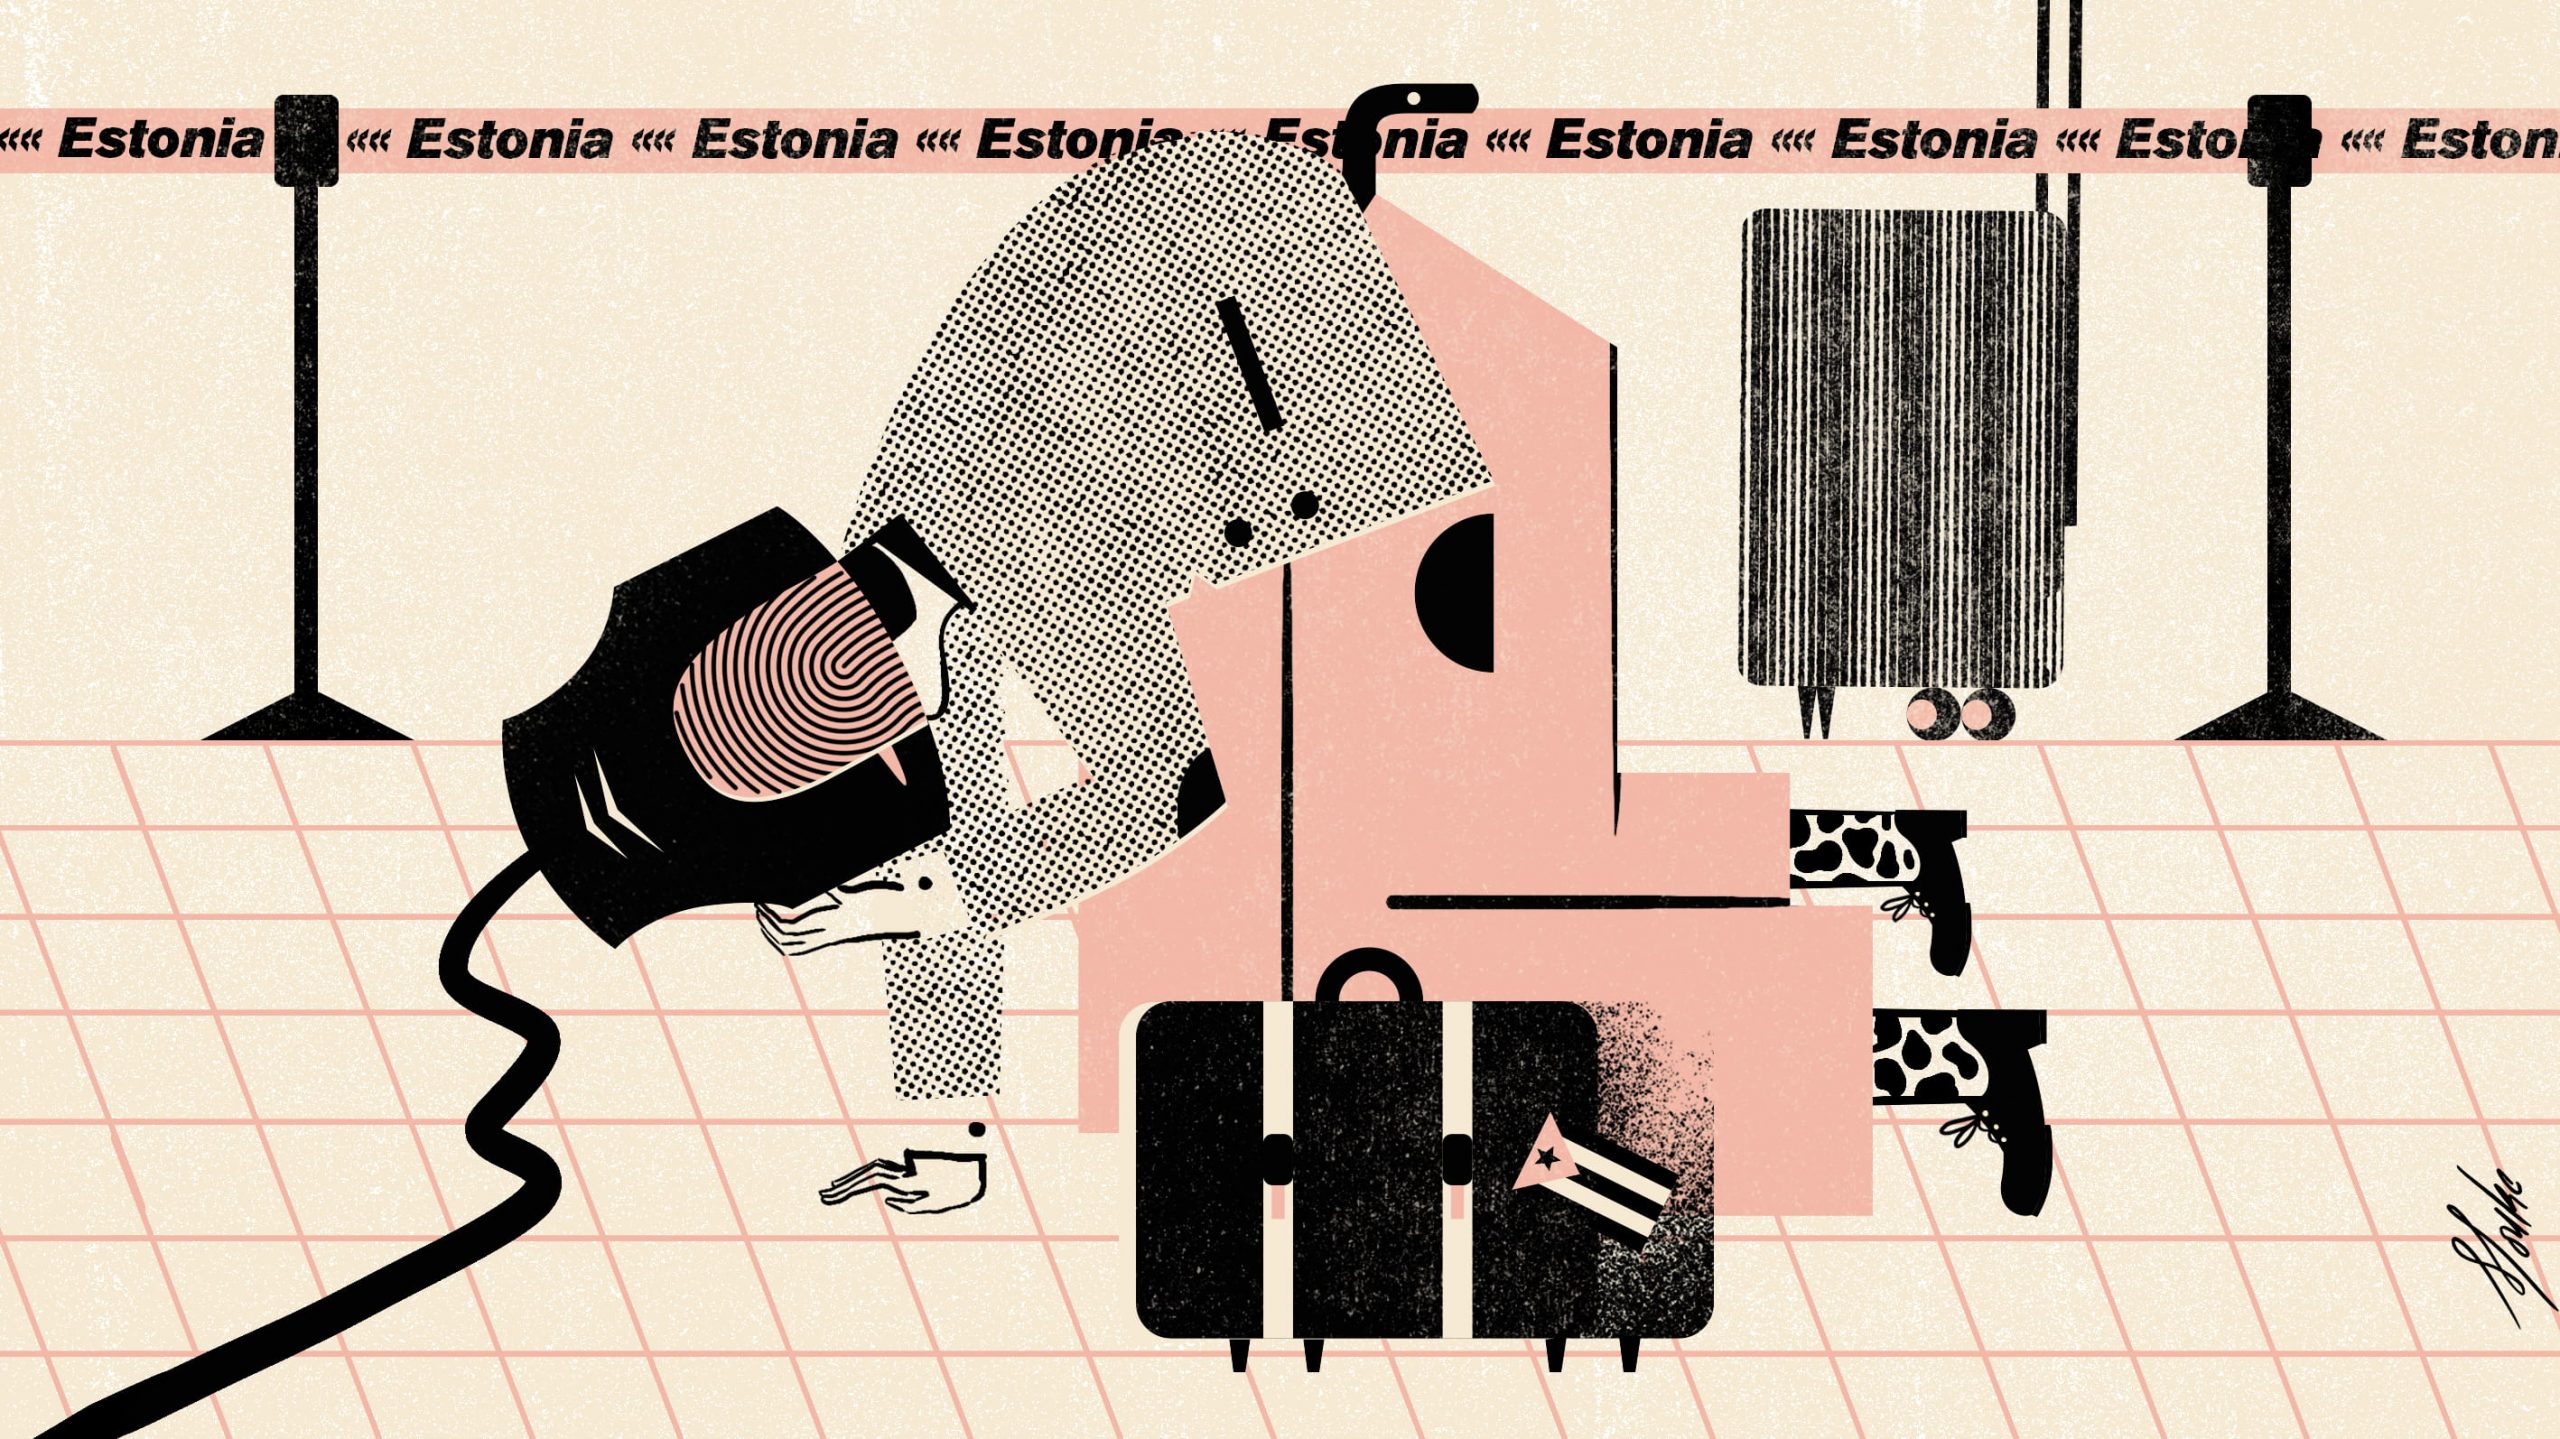 ¿Qué es la residencia electrónica de Estonia y cómo ayudaría a los cubanos?